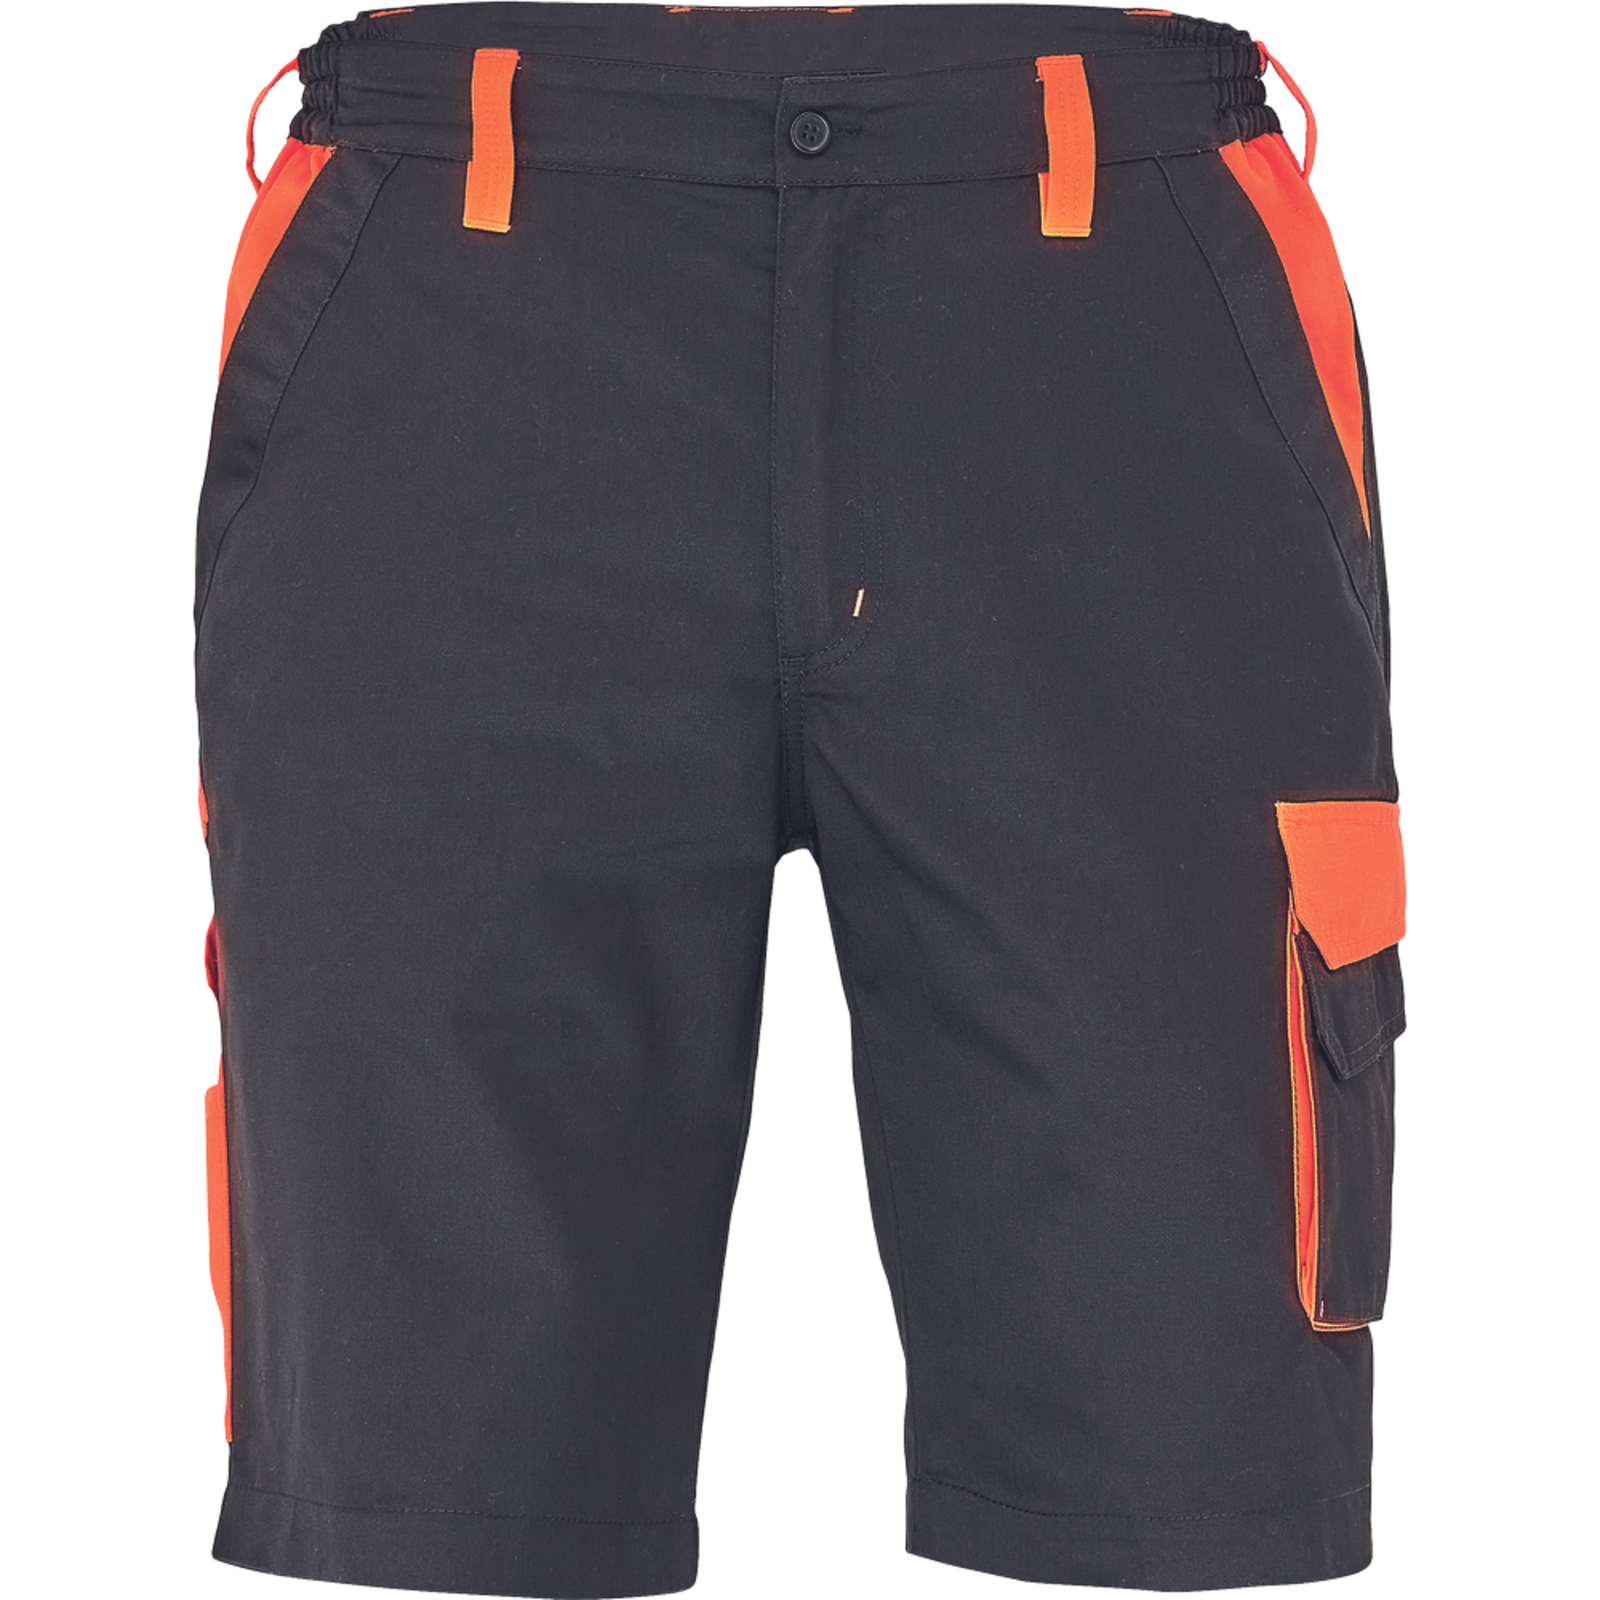 Pánske šortky Cerva Max Vivo - veľkosť: 48, farba: čierna/oranžová